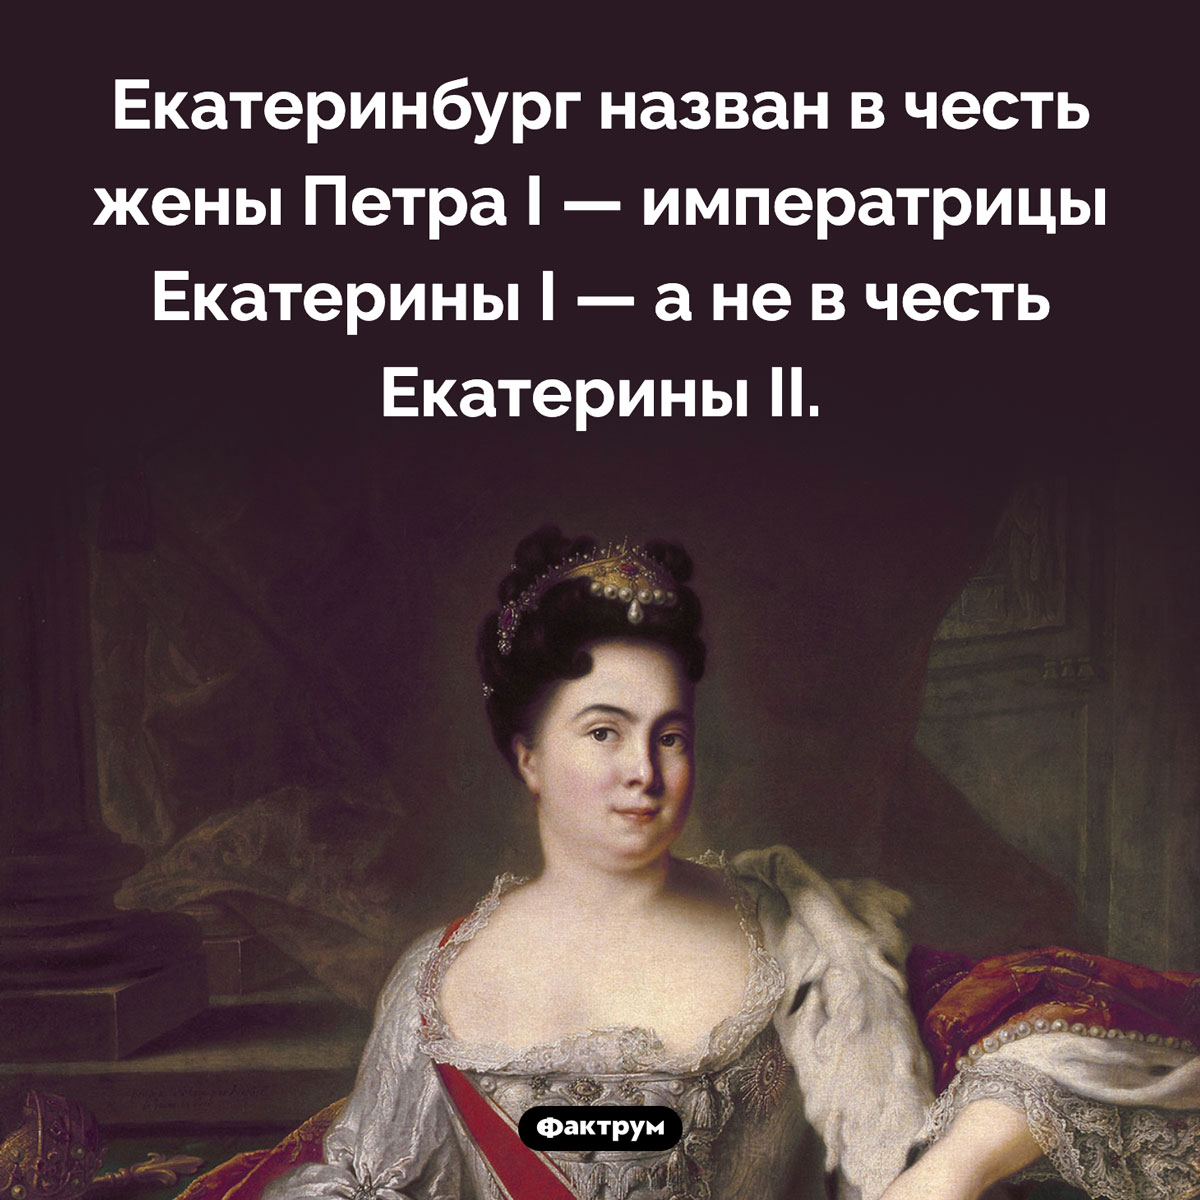 В честь кого назван Екатеринбург. Екатеринбург назван в честь жены Петра I — императрицы Екатерины I — а не в честь Екатерины II.